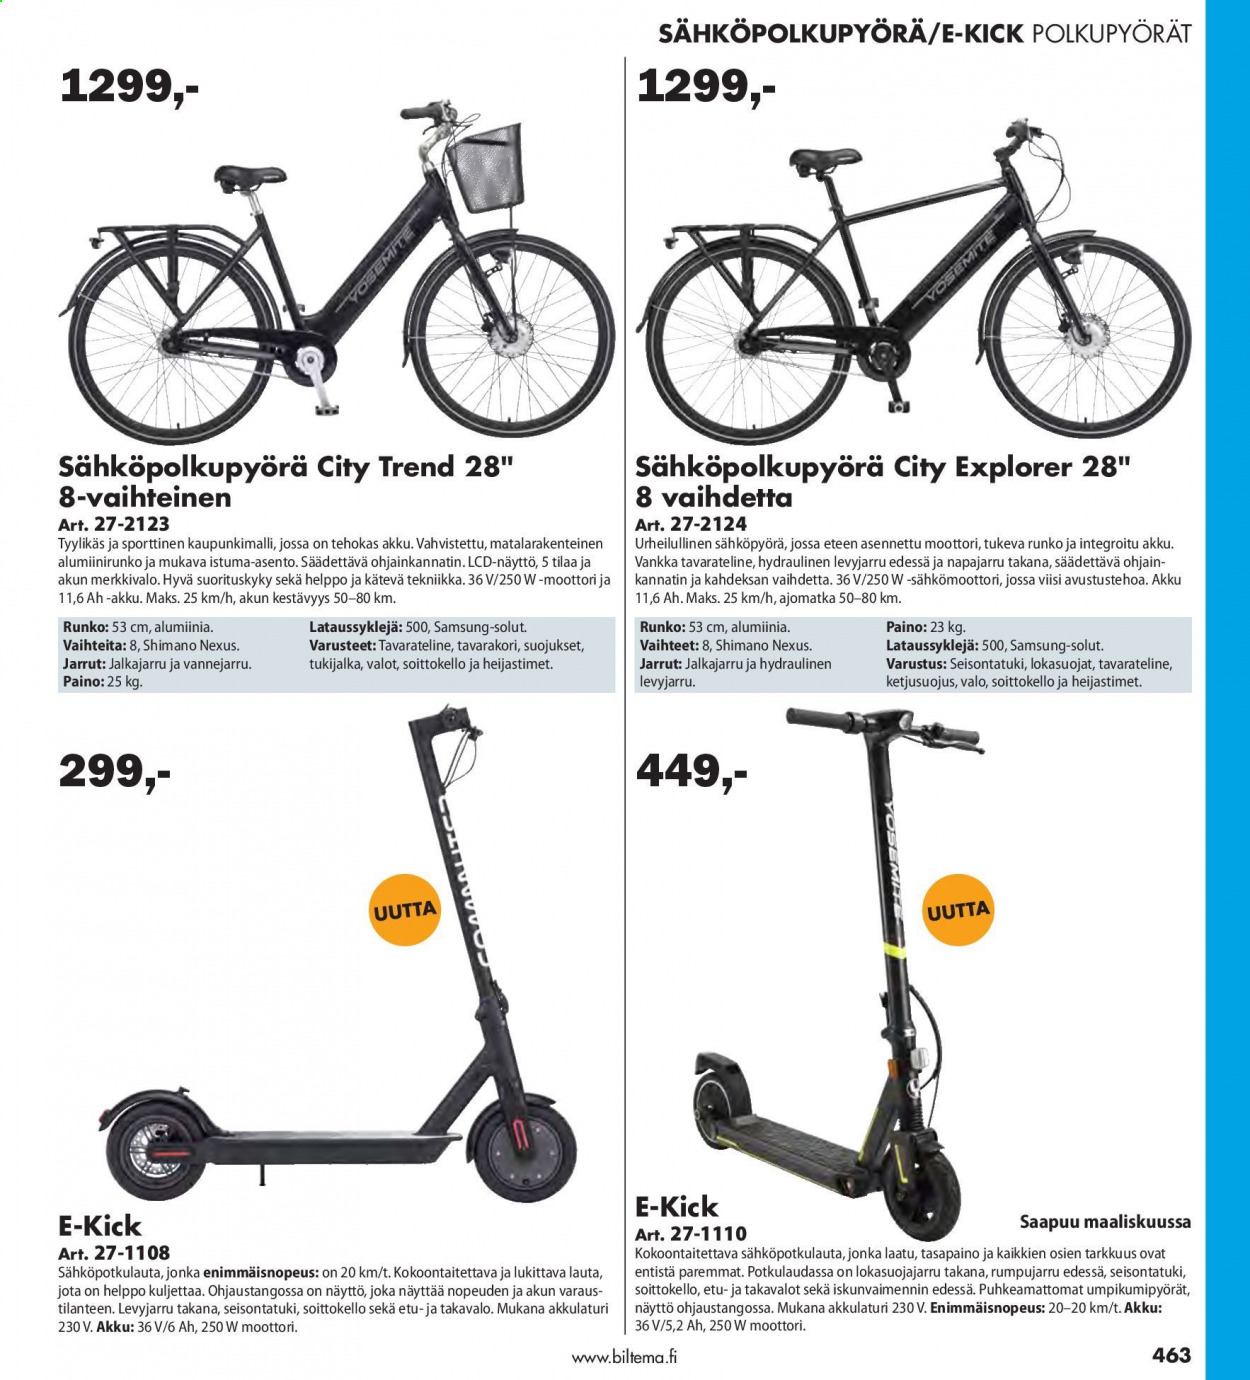 Biltema tarjoukset  - Tarjoustuotteet - akku, näyttö, polkupyörät, Samsung, shimano. Sivu 463.